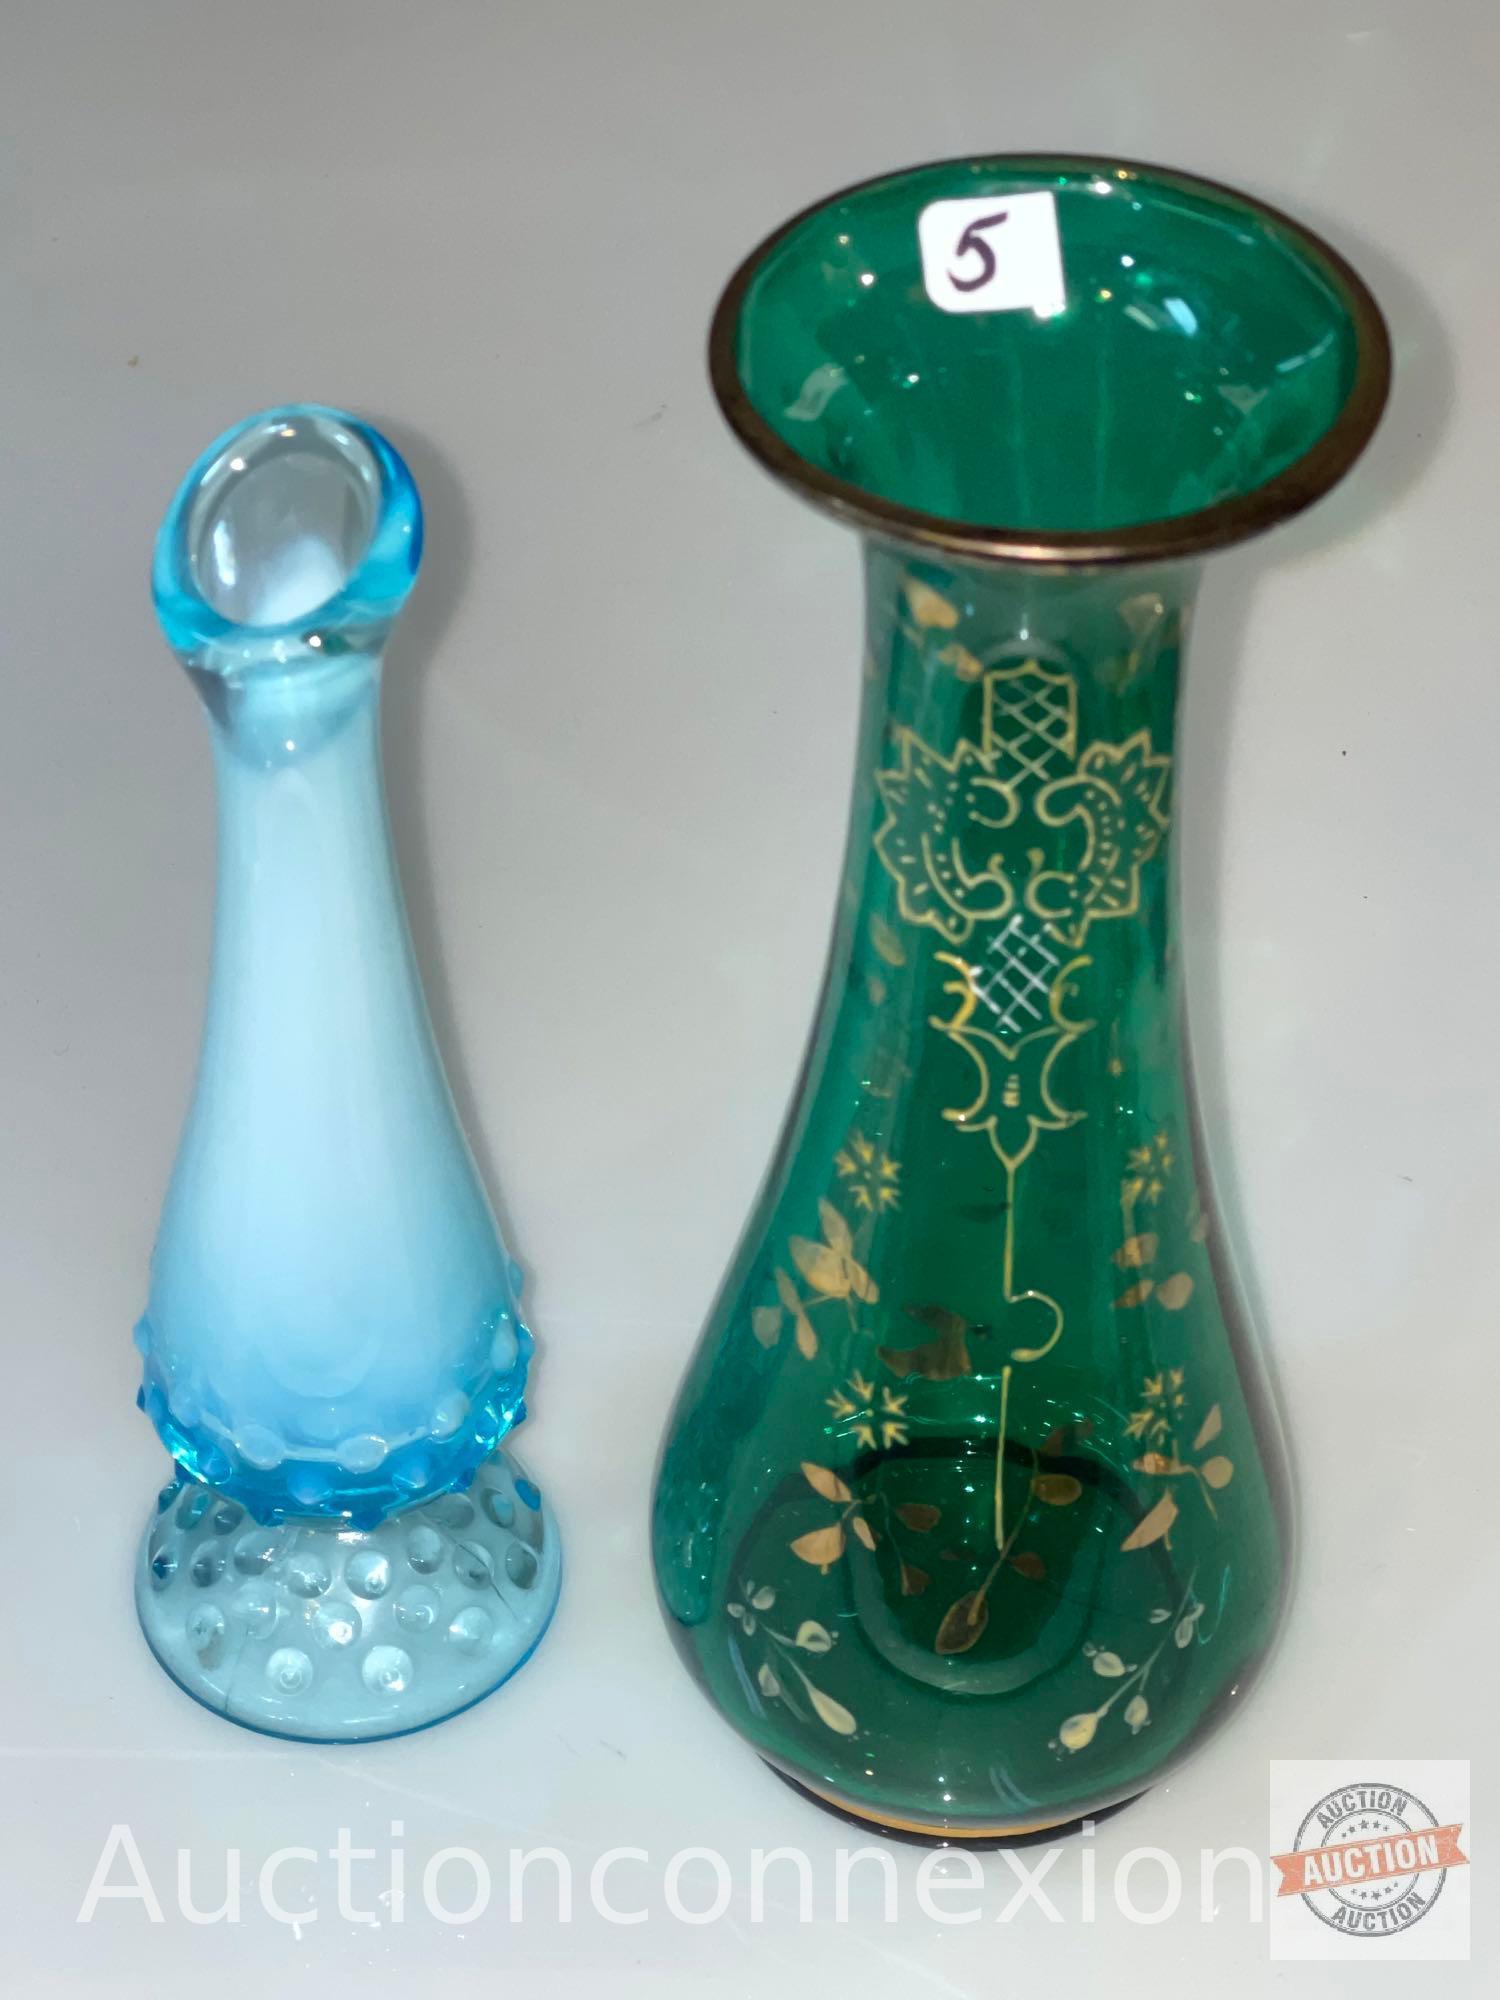 2 Vases - 9" green enamel motif vase and 8" Blue hobnail vase